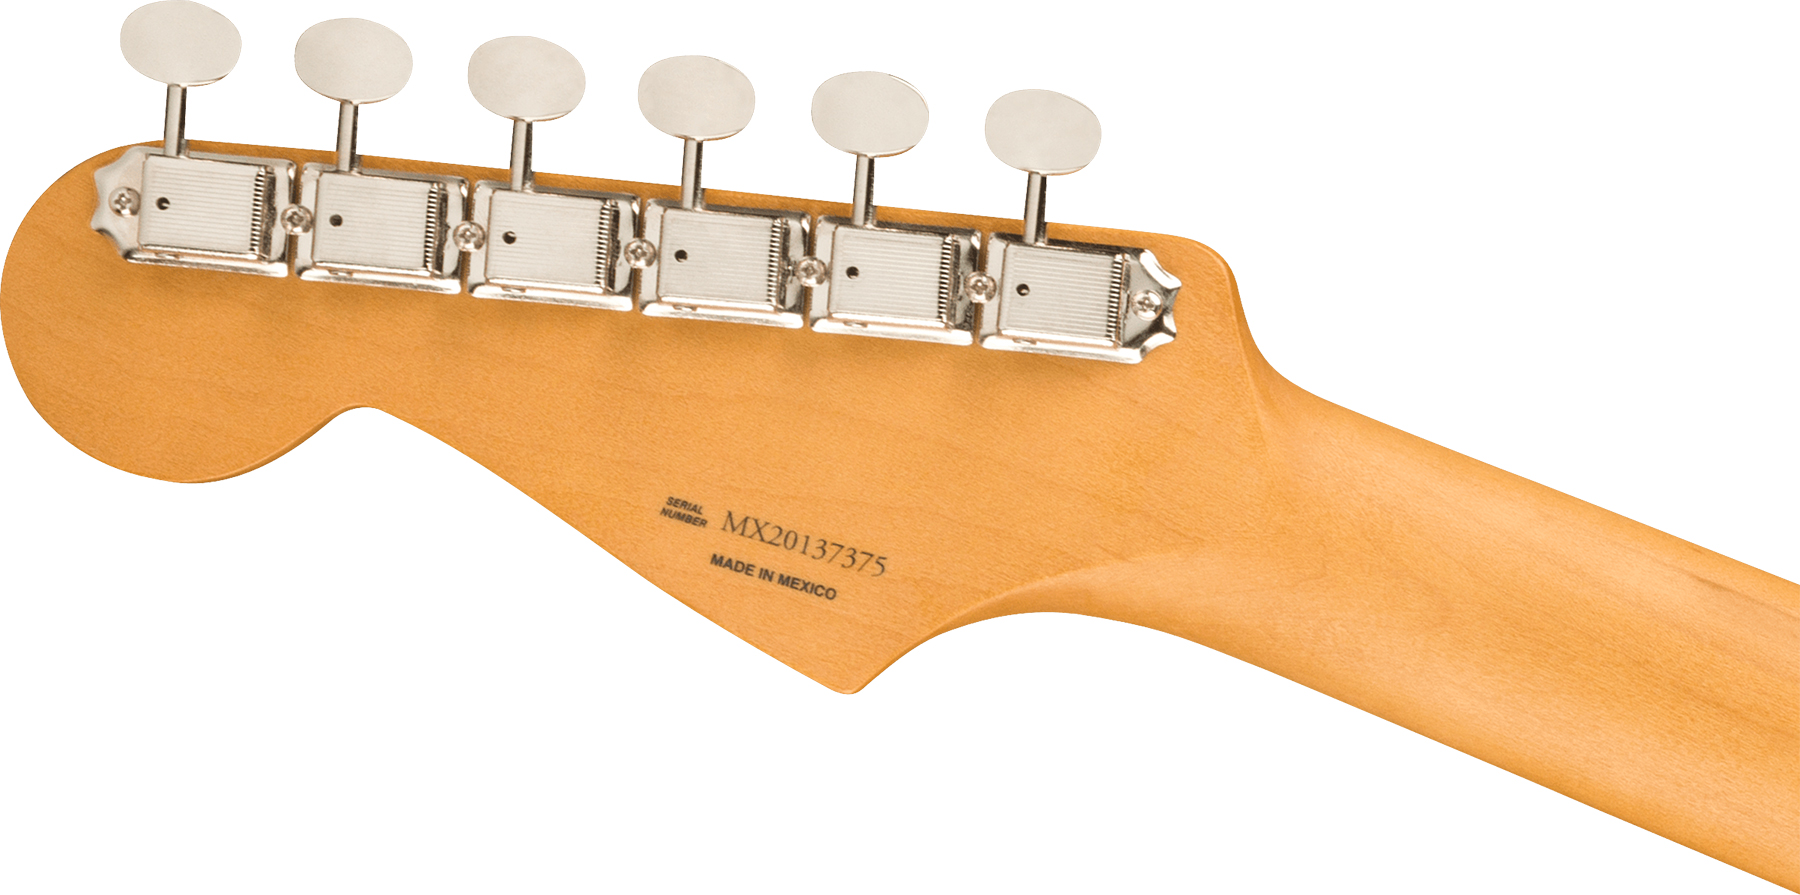 Fender Strat Noventa Mex Ss Ht Mn +housse - Daphne Blue - Str shape electric guitar - Variation 3